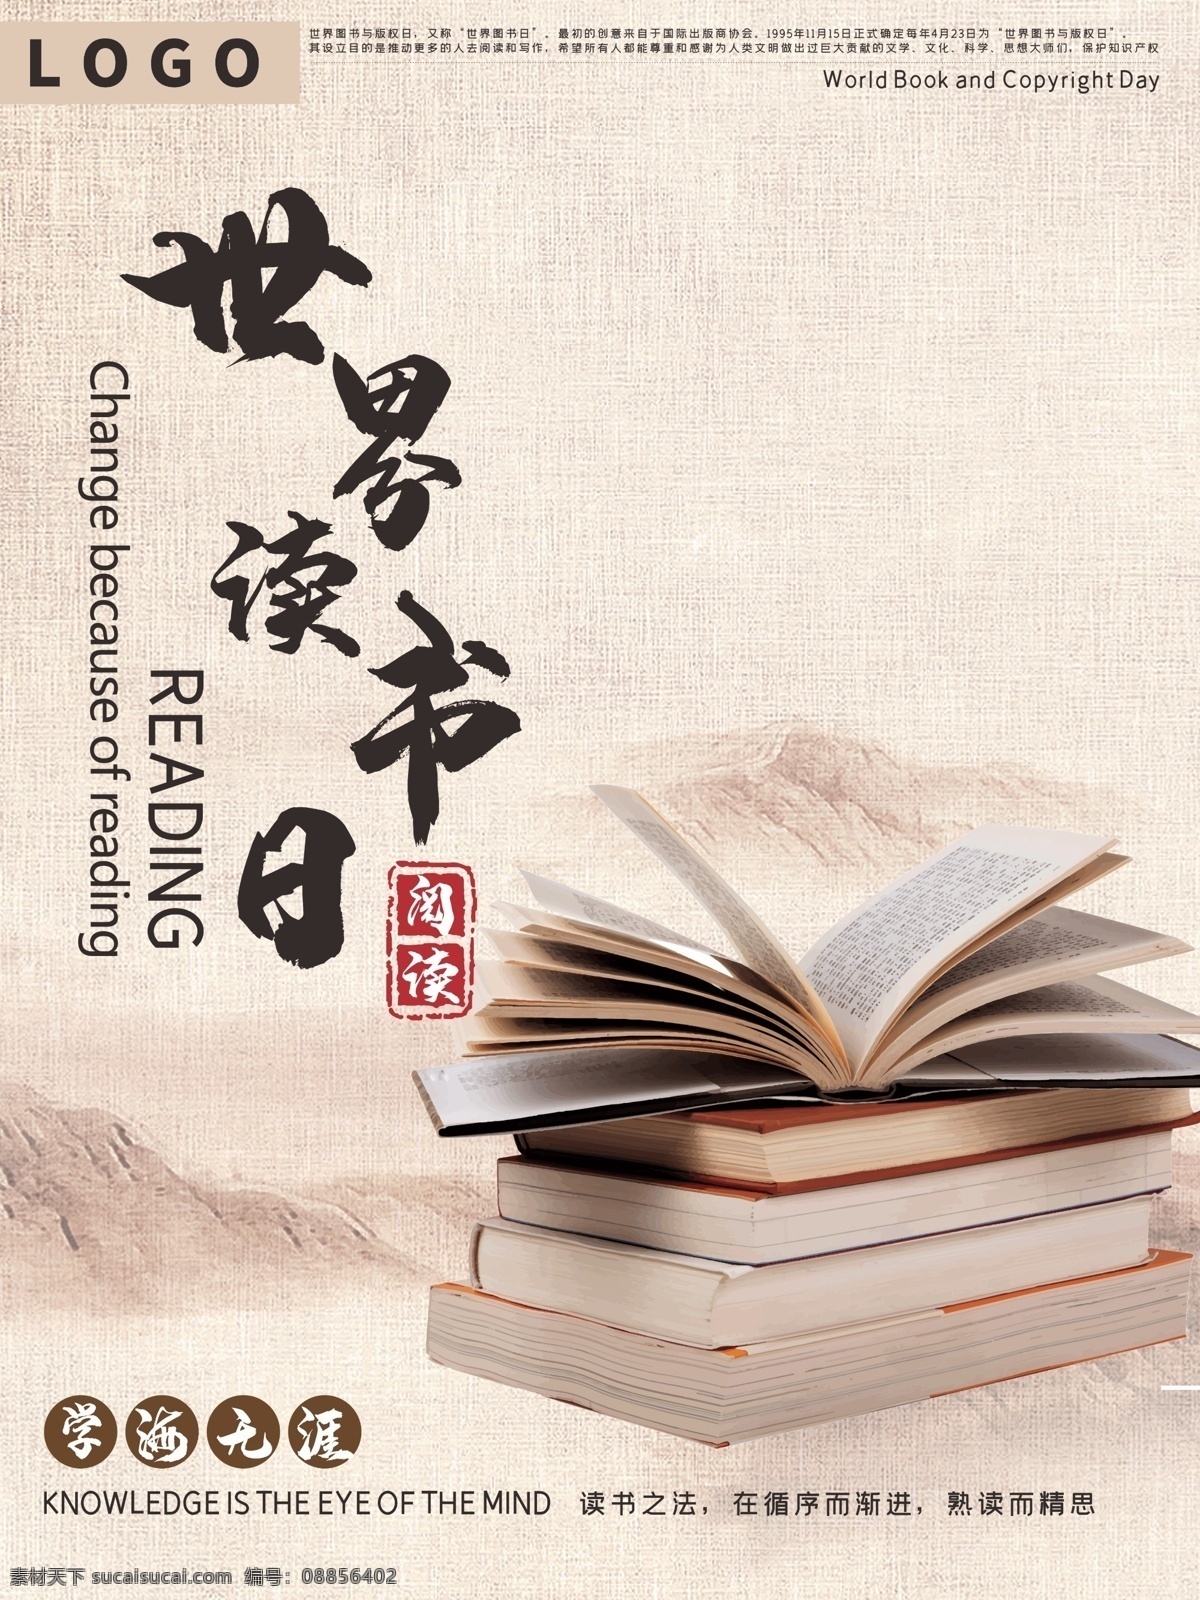 世界 读书 日 原创 手绘 风 中国 海报 古风 节日海报 世界读书日 图书 学习 中国风